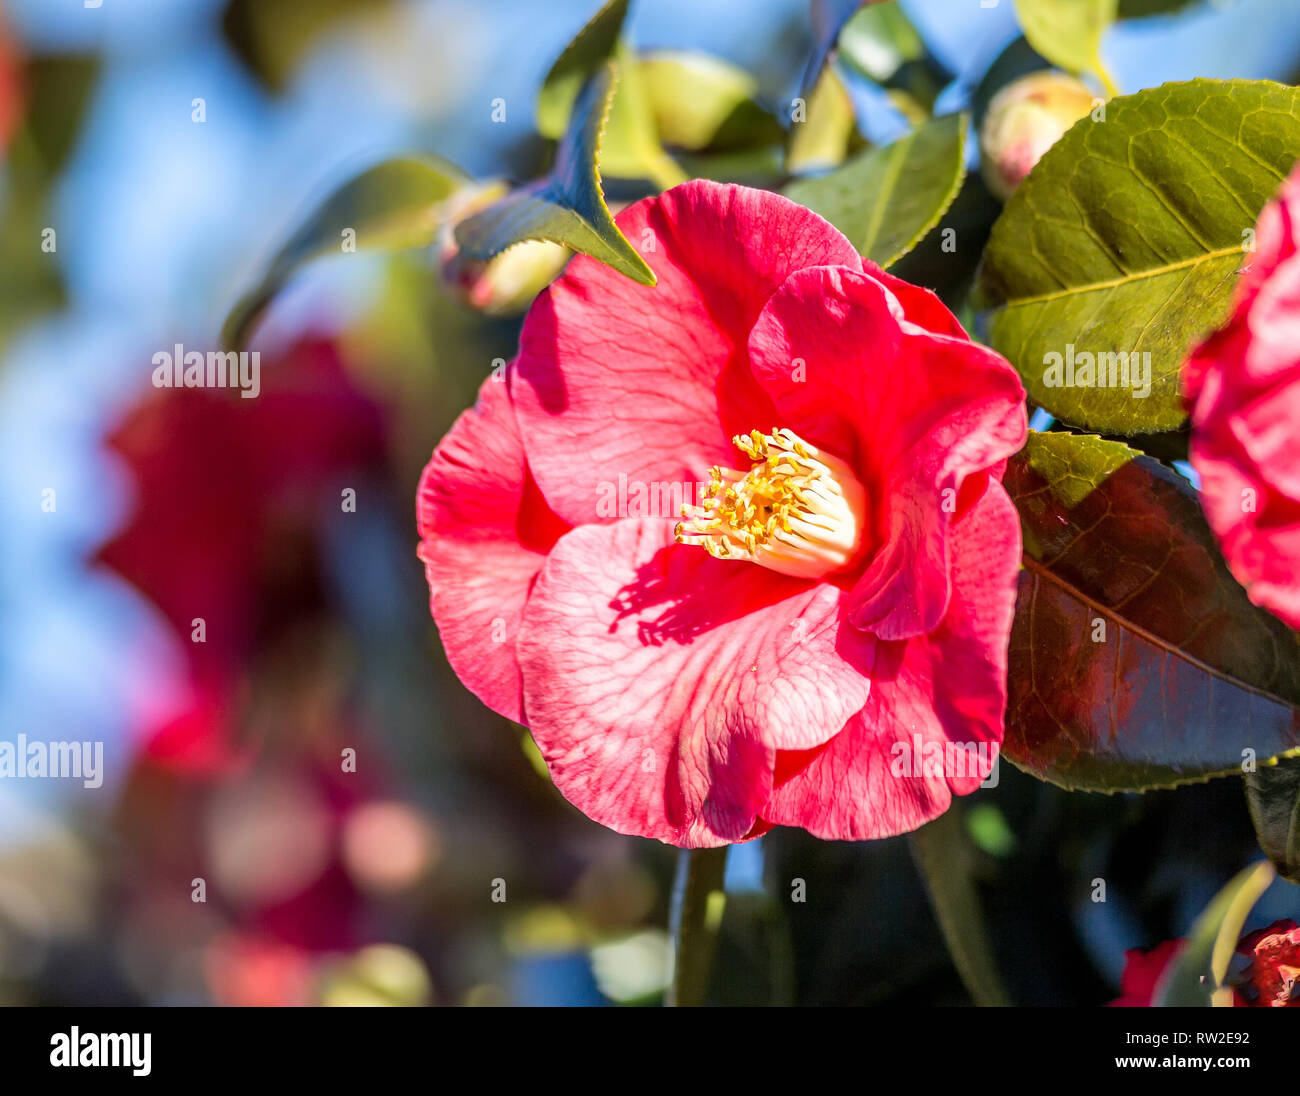 Camellia Plant blossom Stock Photo